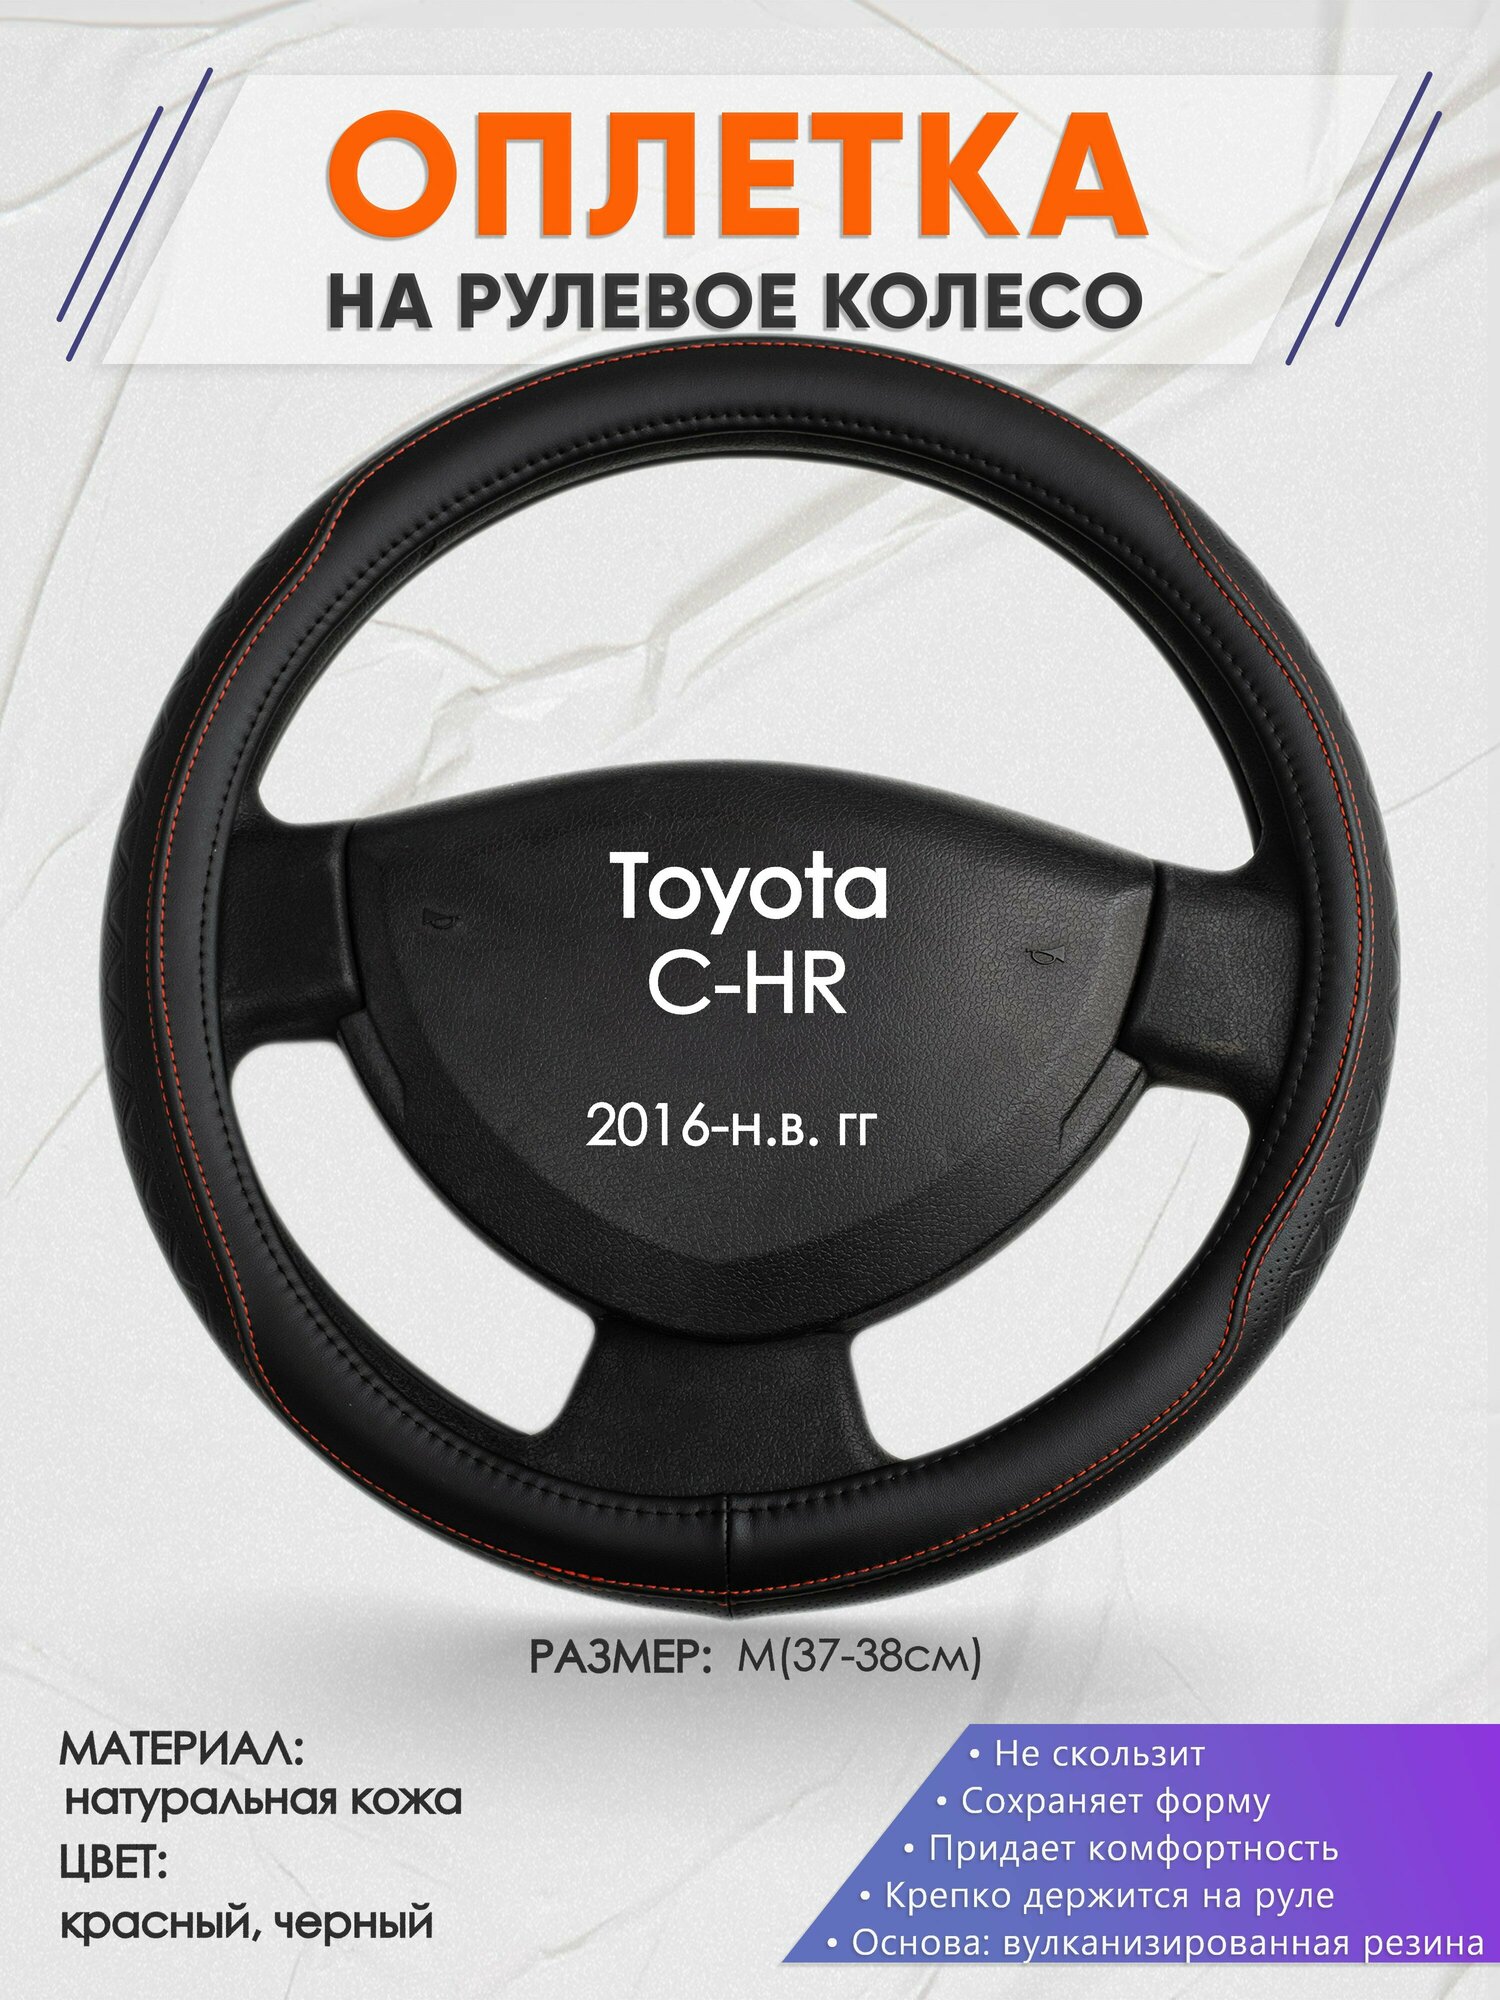 Оплетка на руль для Toyota C-НR (Тойота ) 2016-н. в, M(37-38см), Натуральная кожа 90